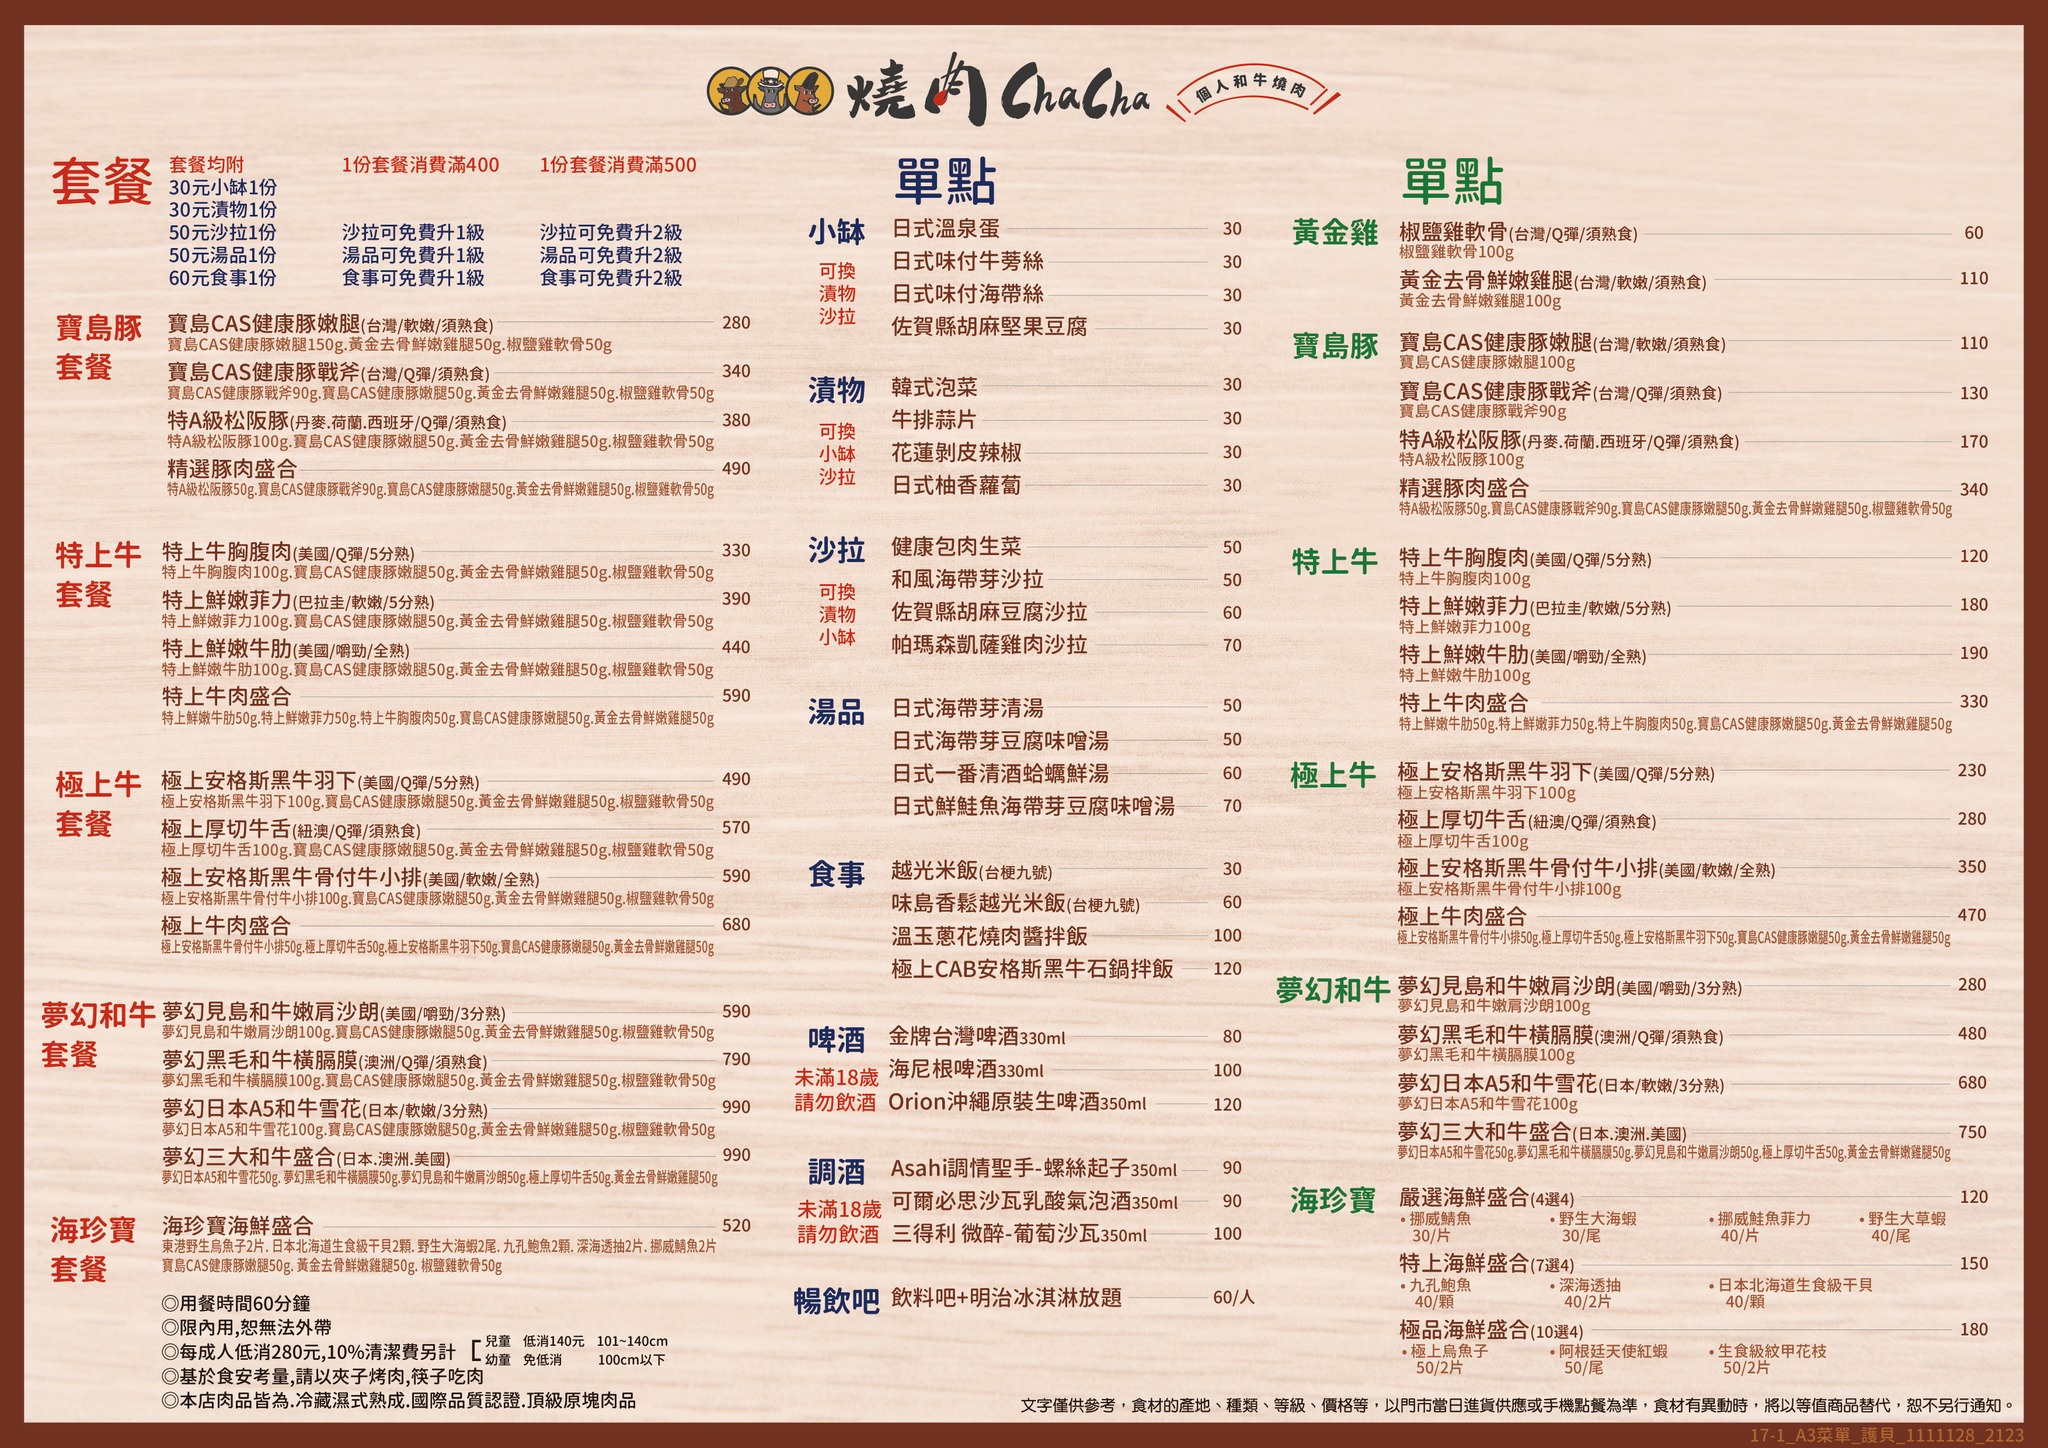 馬辣個人烤肉「燒肉 ChaCha」基隆店菜單一覽表